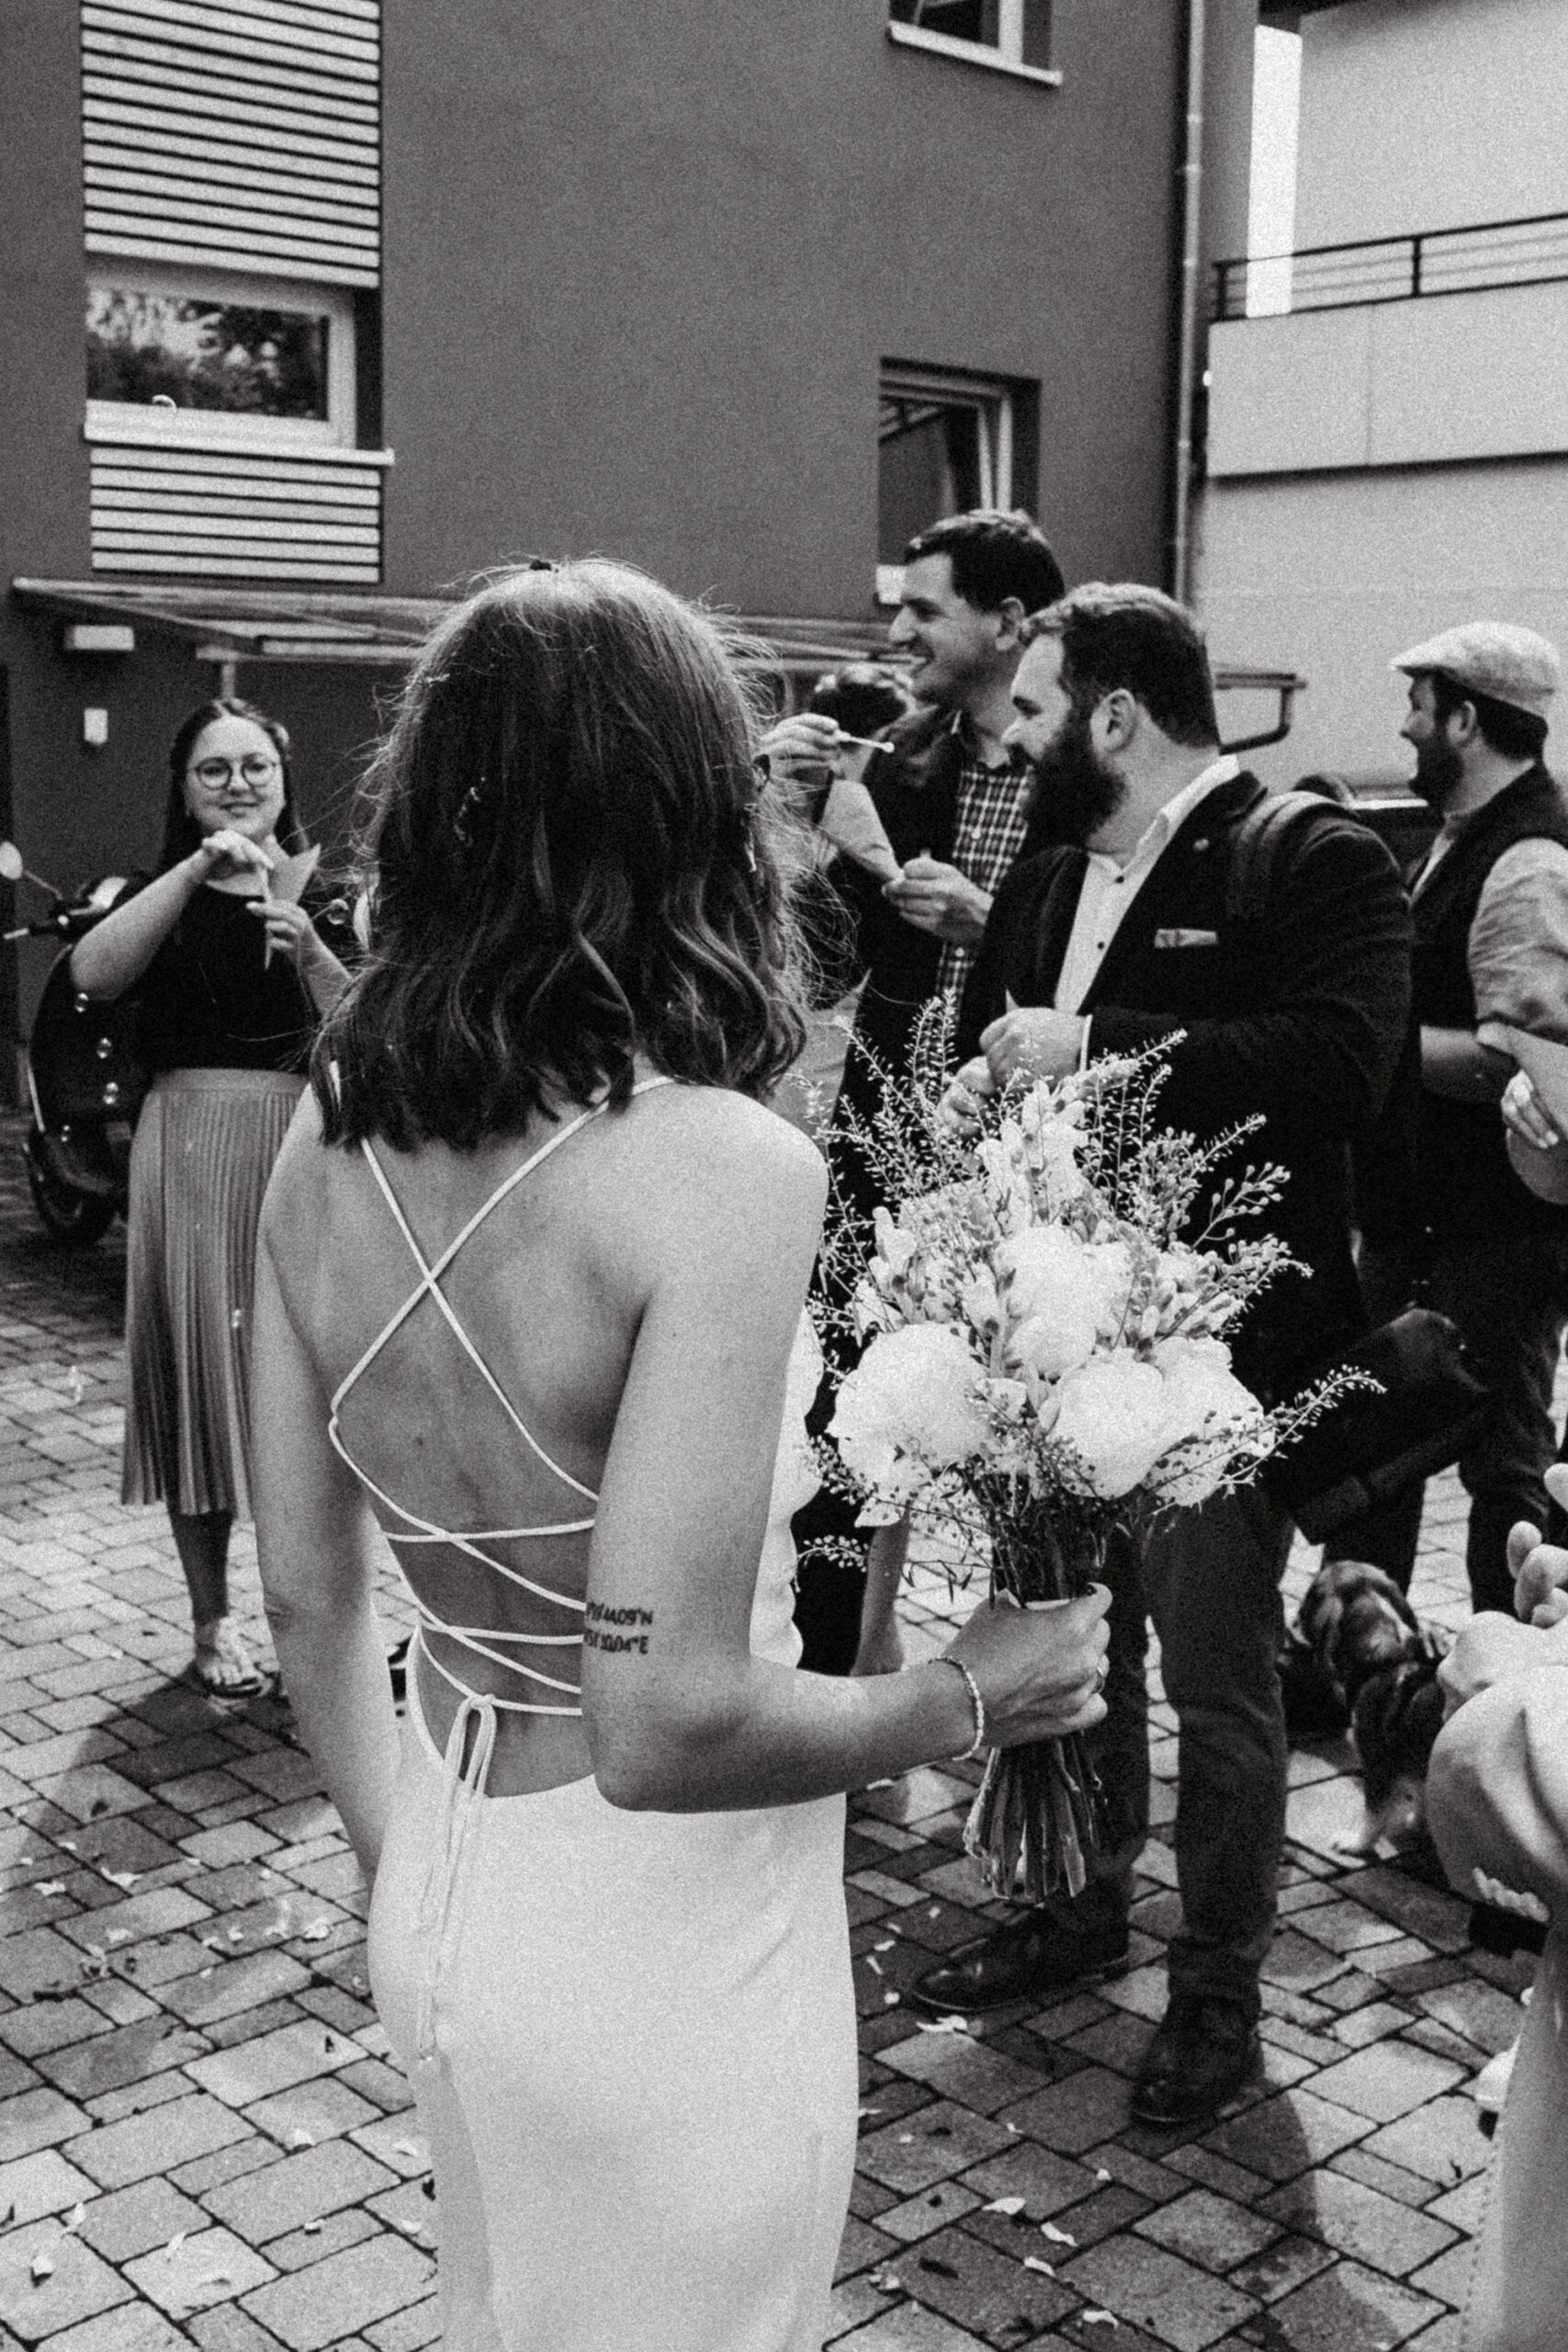 Die Braut schaut nach dem Standesamt zu ihren Gästen mit dem Rücken zur Kamera und dem Brautstrauss in der Hand. Bild in Schwarz weiß